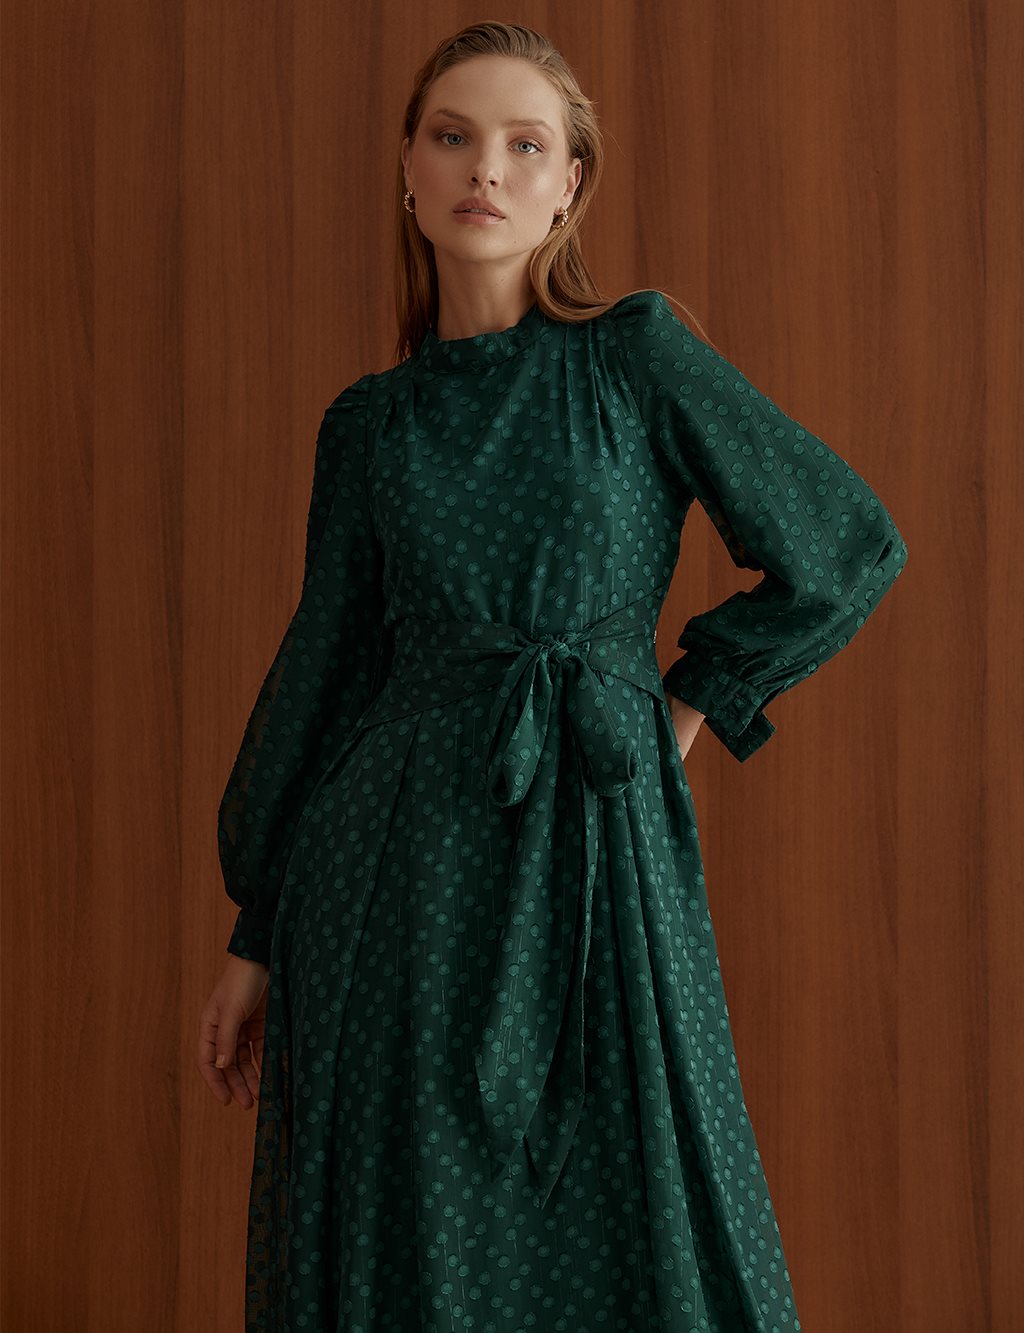 Pleated Full Length Dress Emerald ürünler defolu ürünlerdir bu nedenle satışa kapatılmıştır